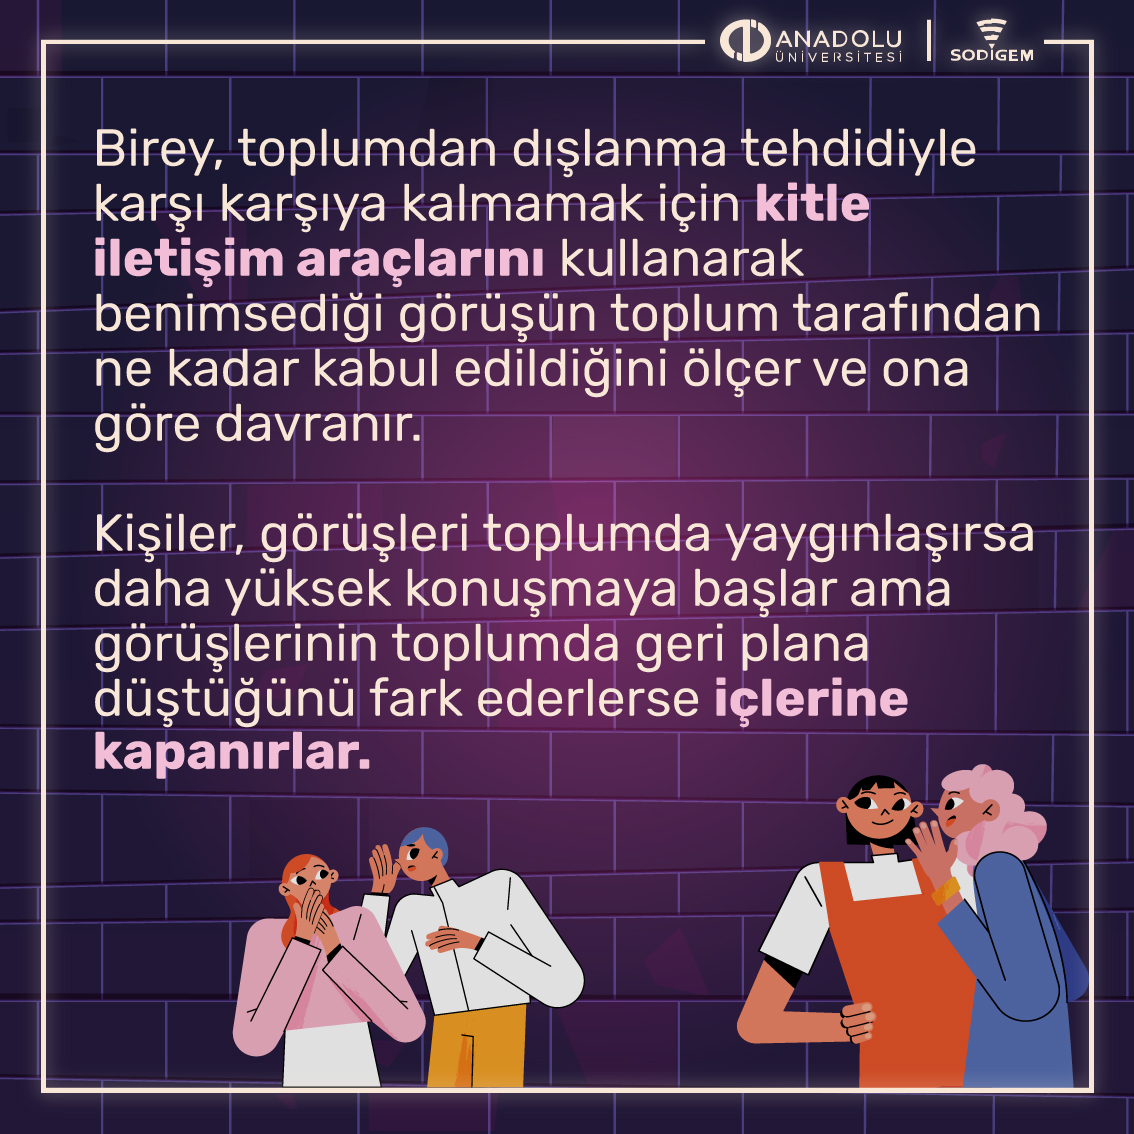 Suskunluk Sarmalı nedir? #sodigem @Anadolu_Univ